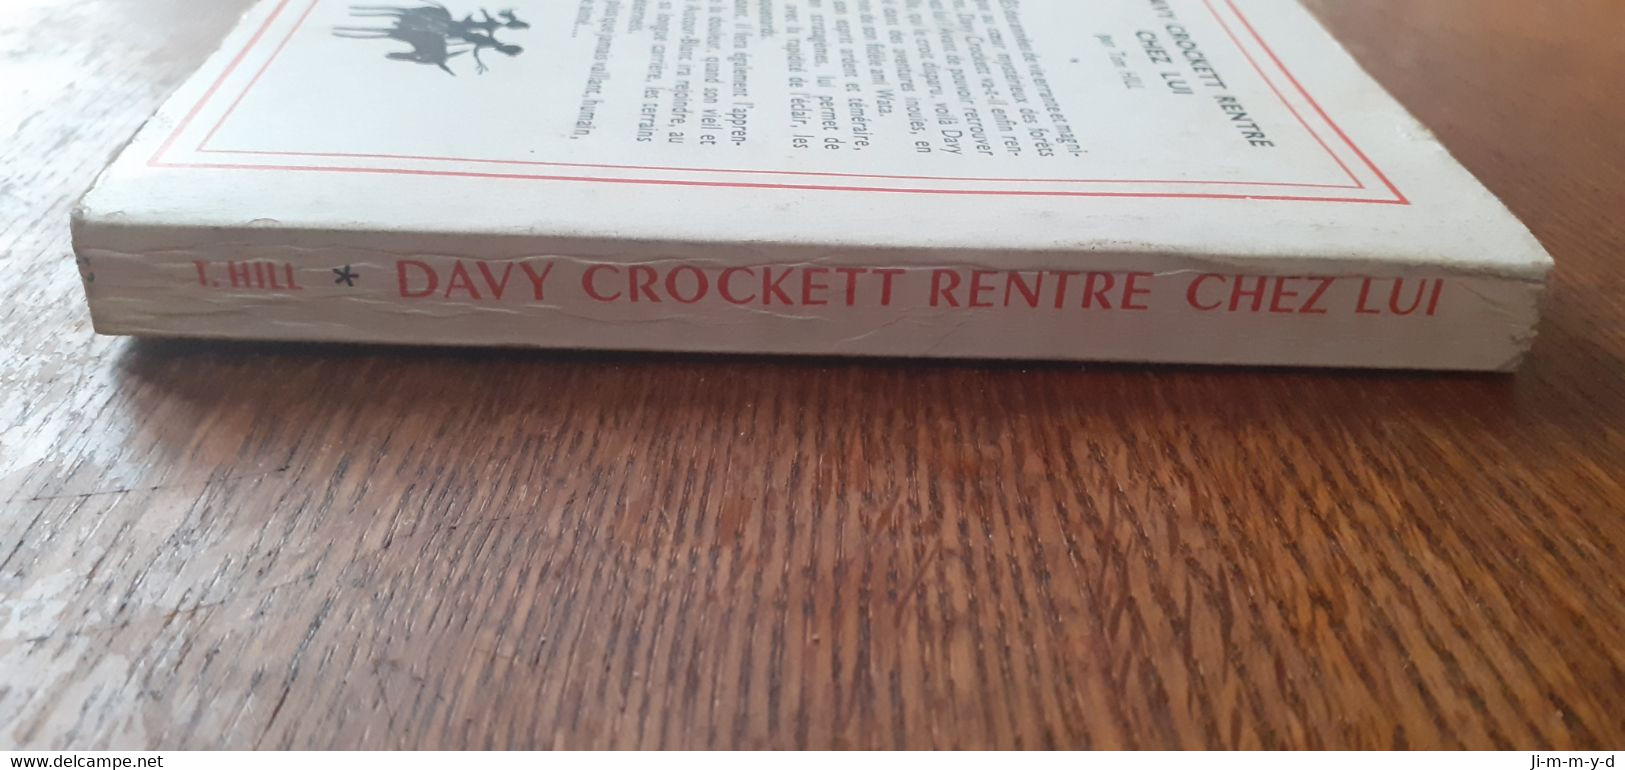 Collection segur : davy crockett rentre chez lui.  Édition Hachette 1960